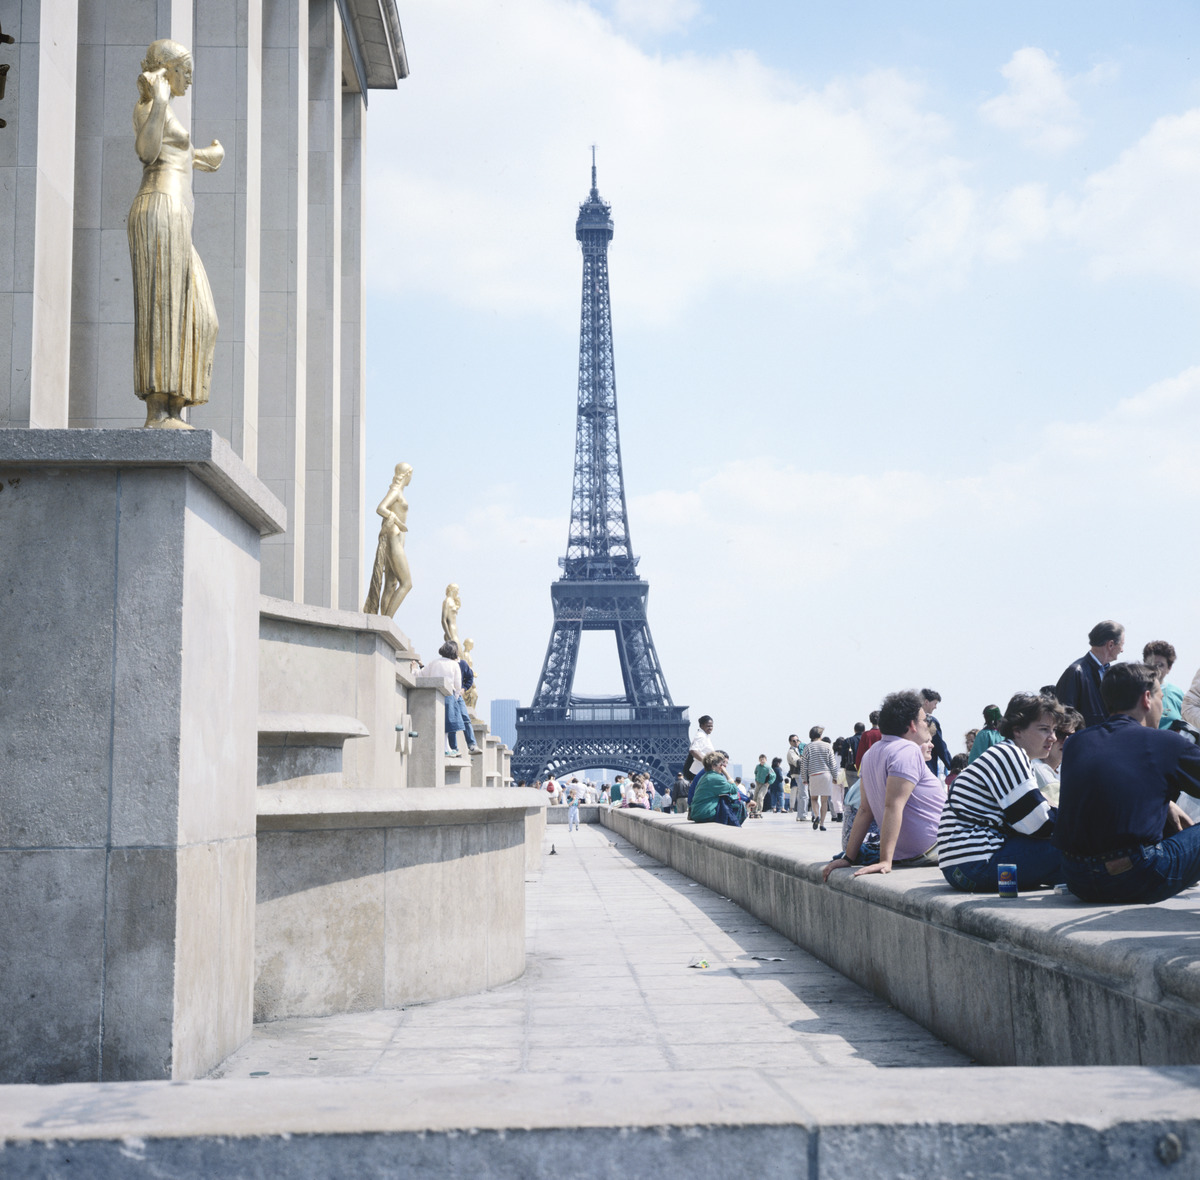 ihmisiä Palais Chaillotin ulkopuolella, taustalla Eiffel torni